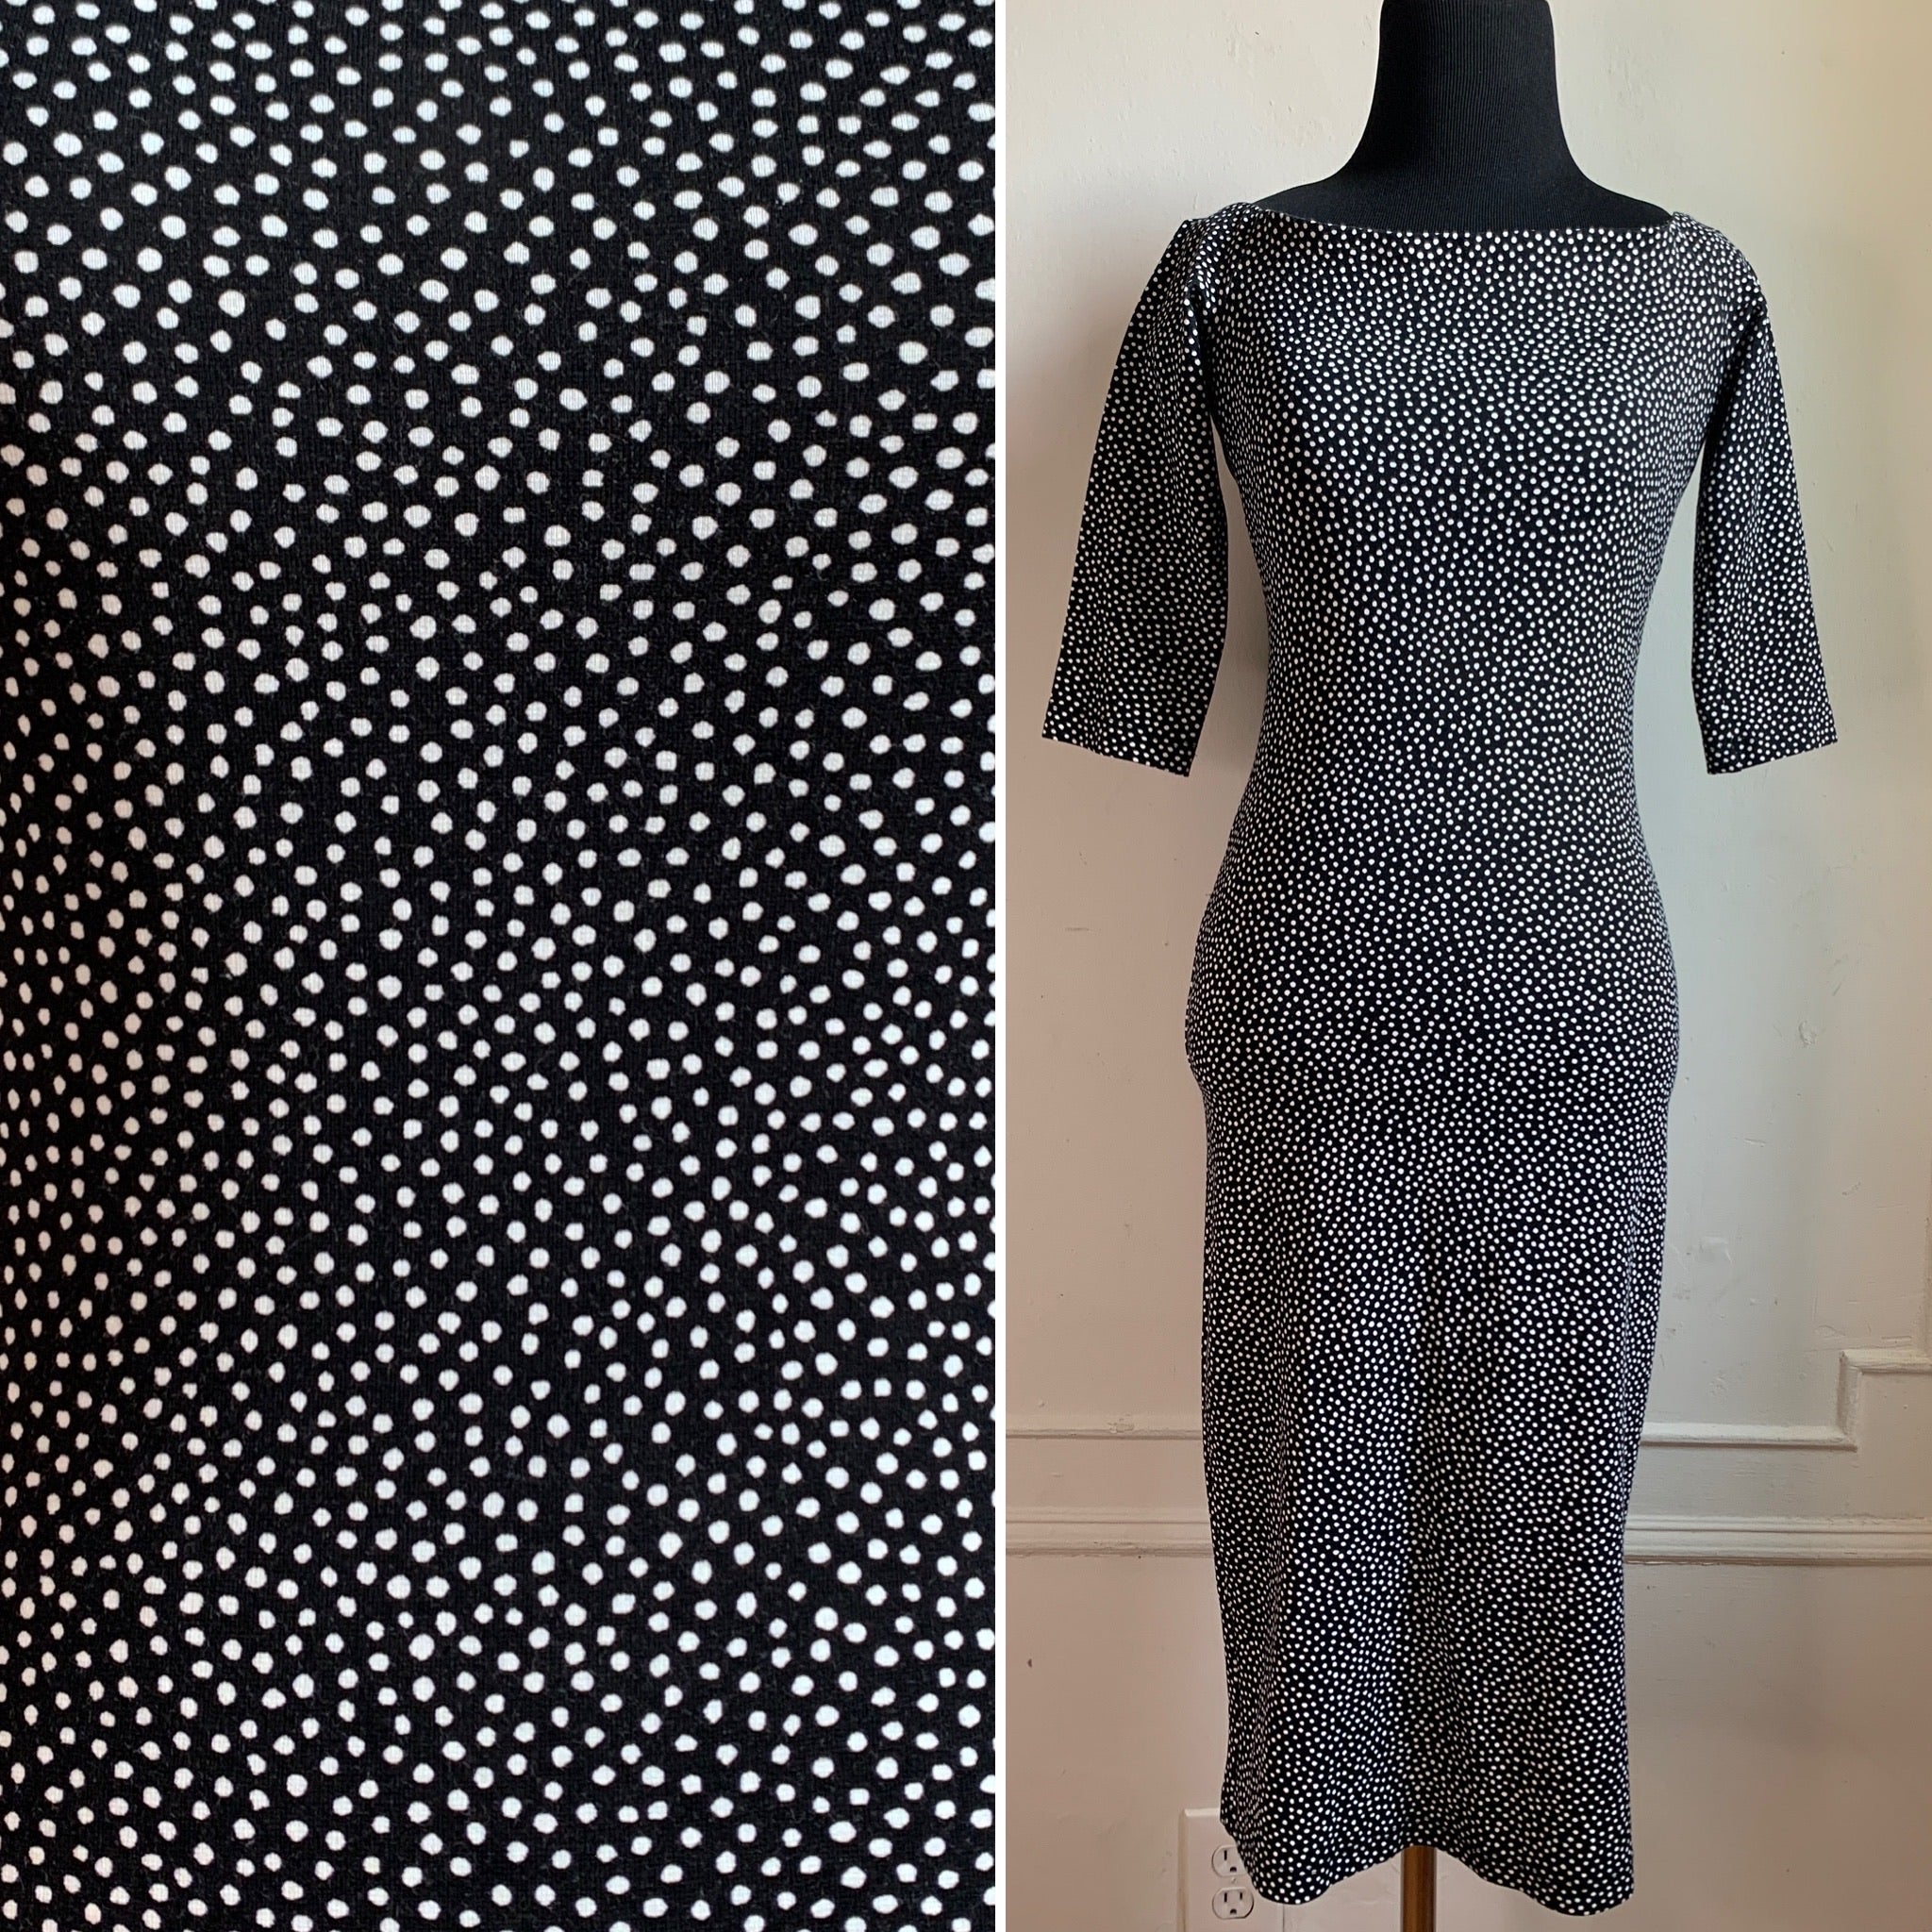 Zara Vintage Inspired Polka Dot BodyCon Dress